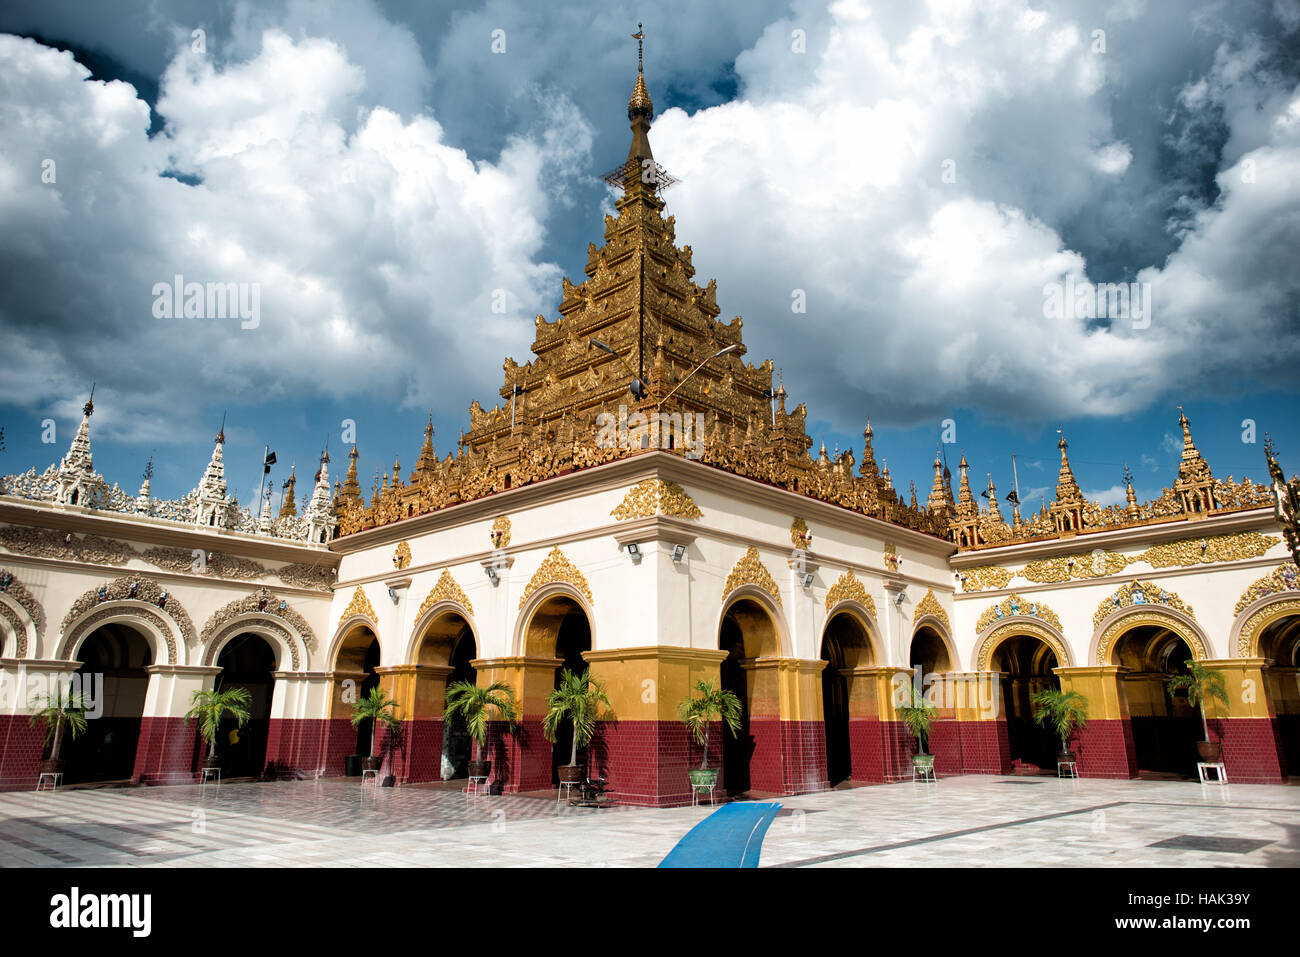 MANDALAY, Myanmar - Temple du Bouddha Mahamuni (également connu sous le nom de la Pagode Mahamuni) est un site religieux très reconnu dans la région de Mandalay. En son coeur est l'image du Bouddha Mahamuni, réputé pour être l'un des cinq seuls traits originaux du Bouddha au cours de sa vie. Il est couvert d'aluminium dans l'objet d'hommages par les fidèles et pèlerins. Banque D'Images